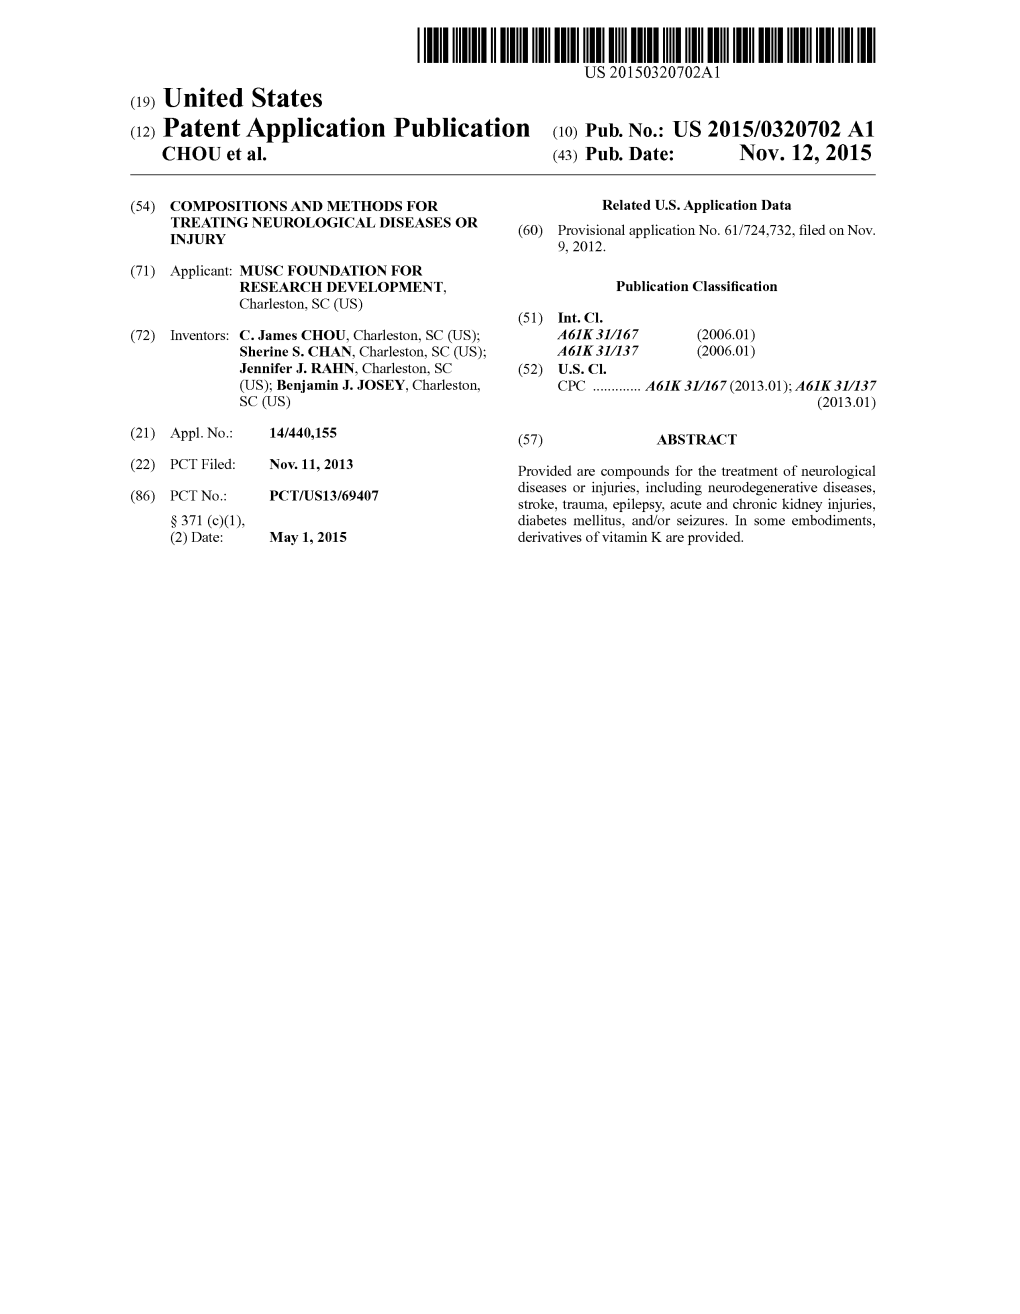 (12) Patent Application Publication (10) Pub. No.: US 2015/0320702 A1 CHOU Et Al